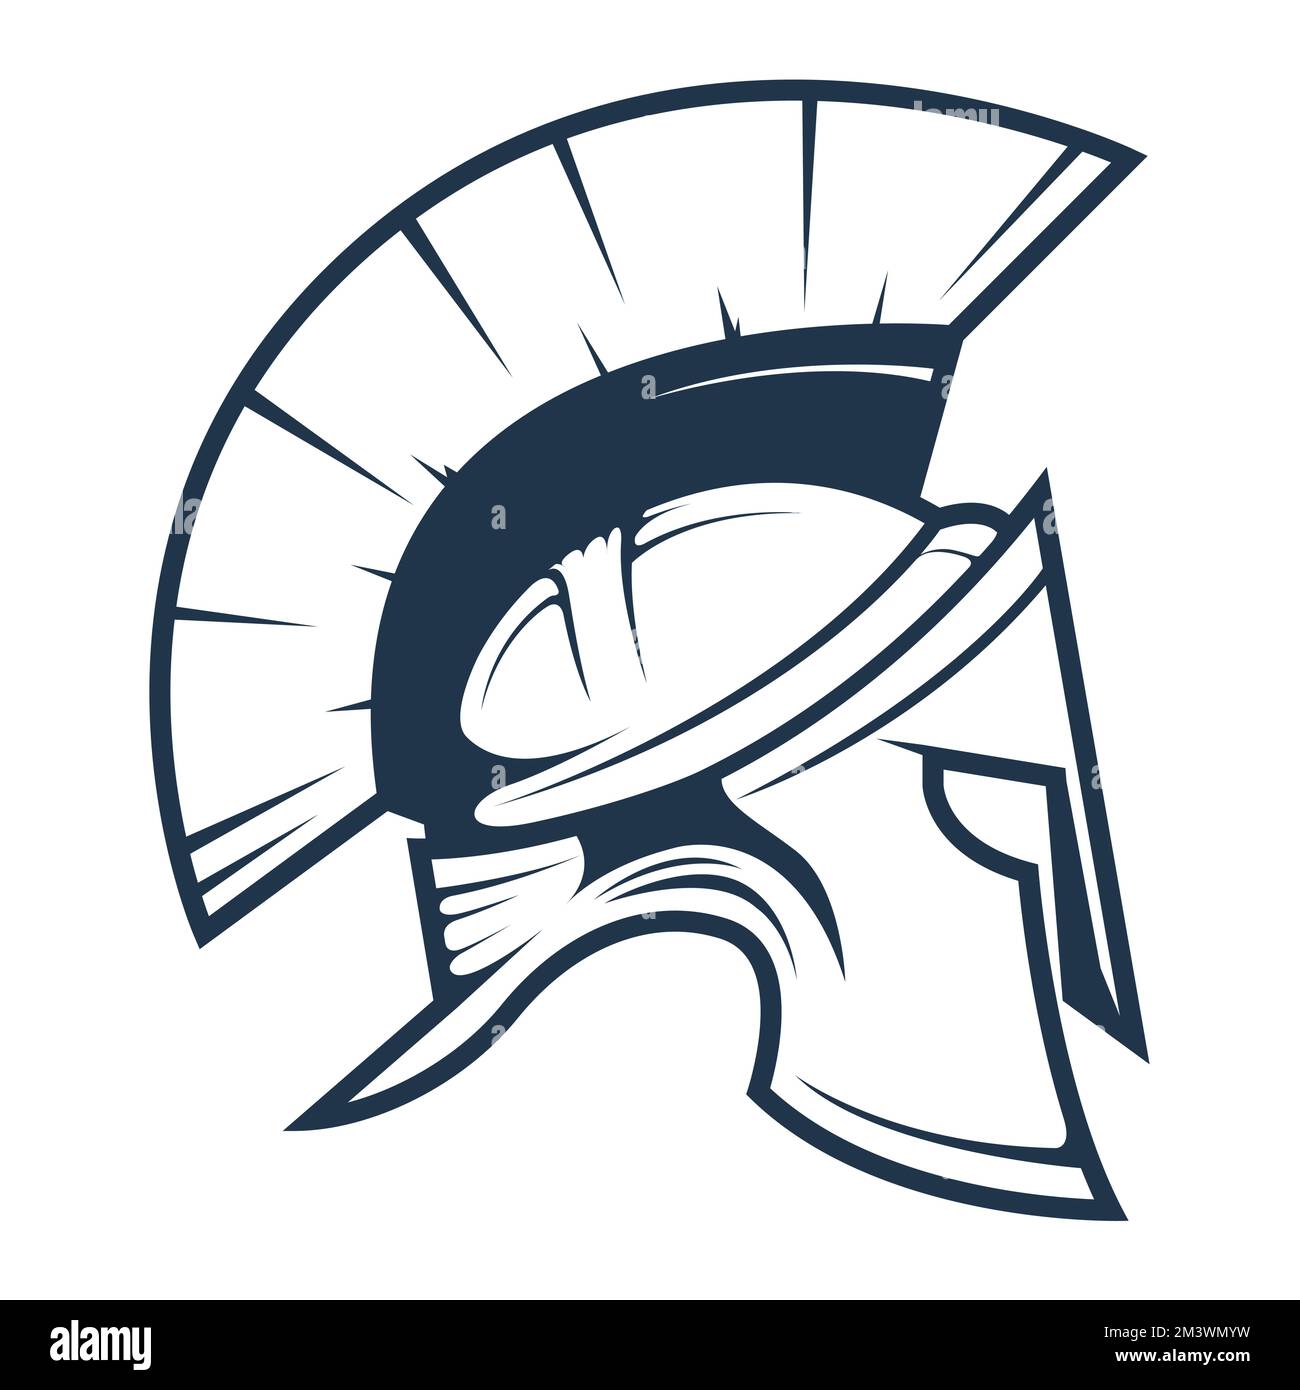 Spartan-Krieger-Helm, das römische Reich Legionär oder Gladiator-Kopfstück, alter Soldat, Vektor Stock Vektor